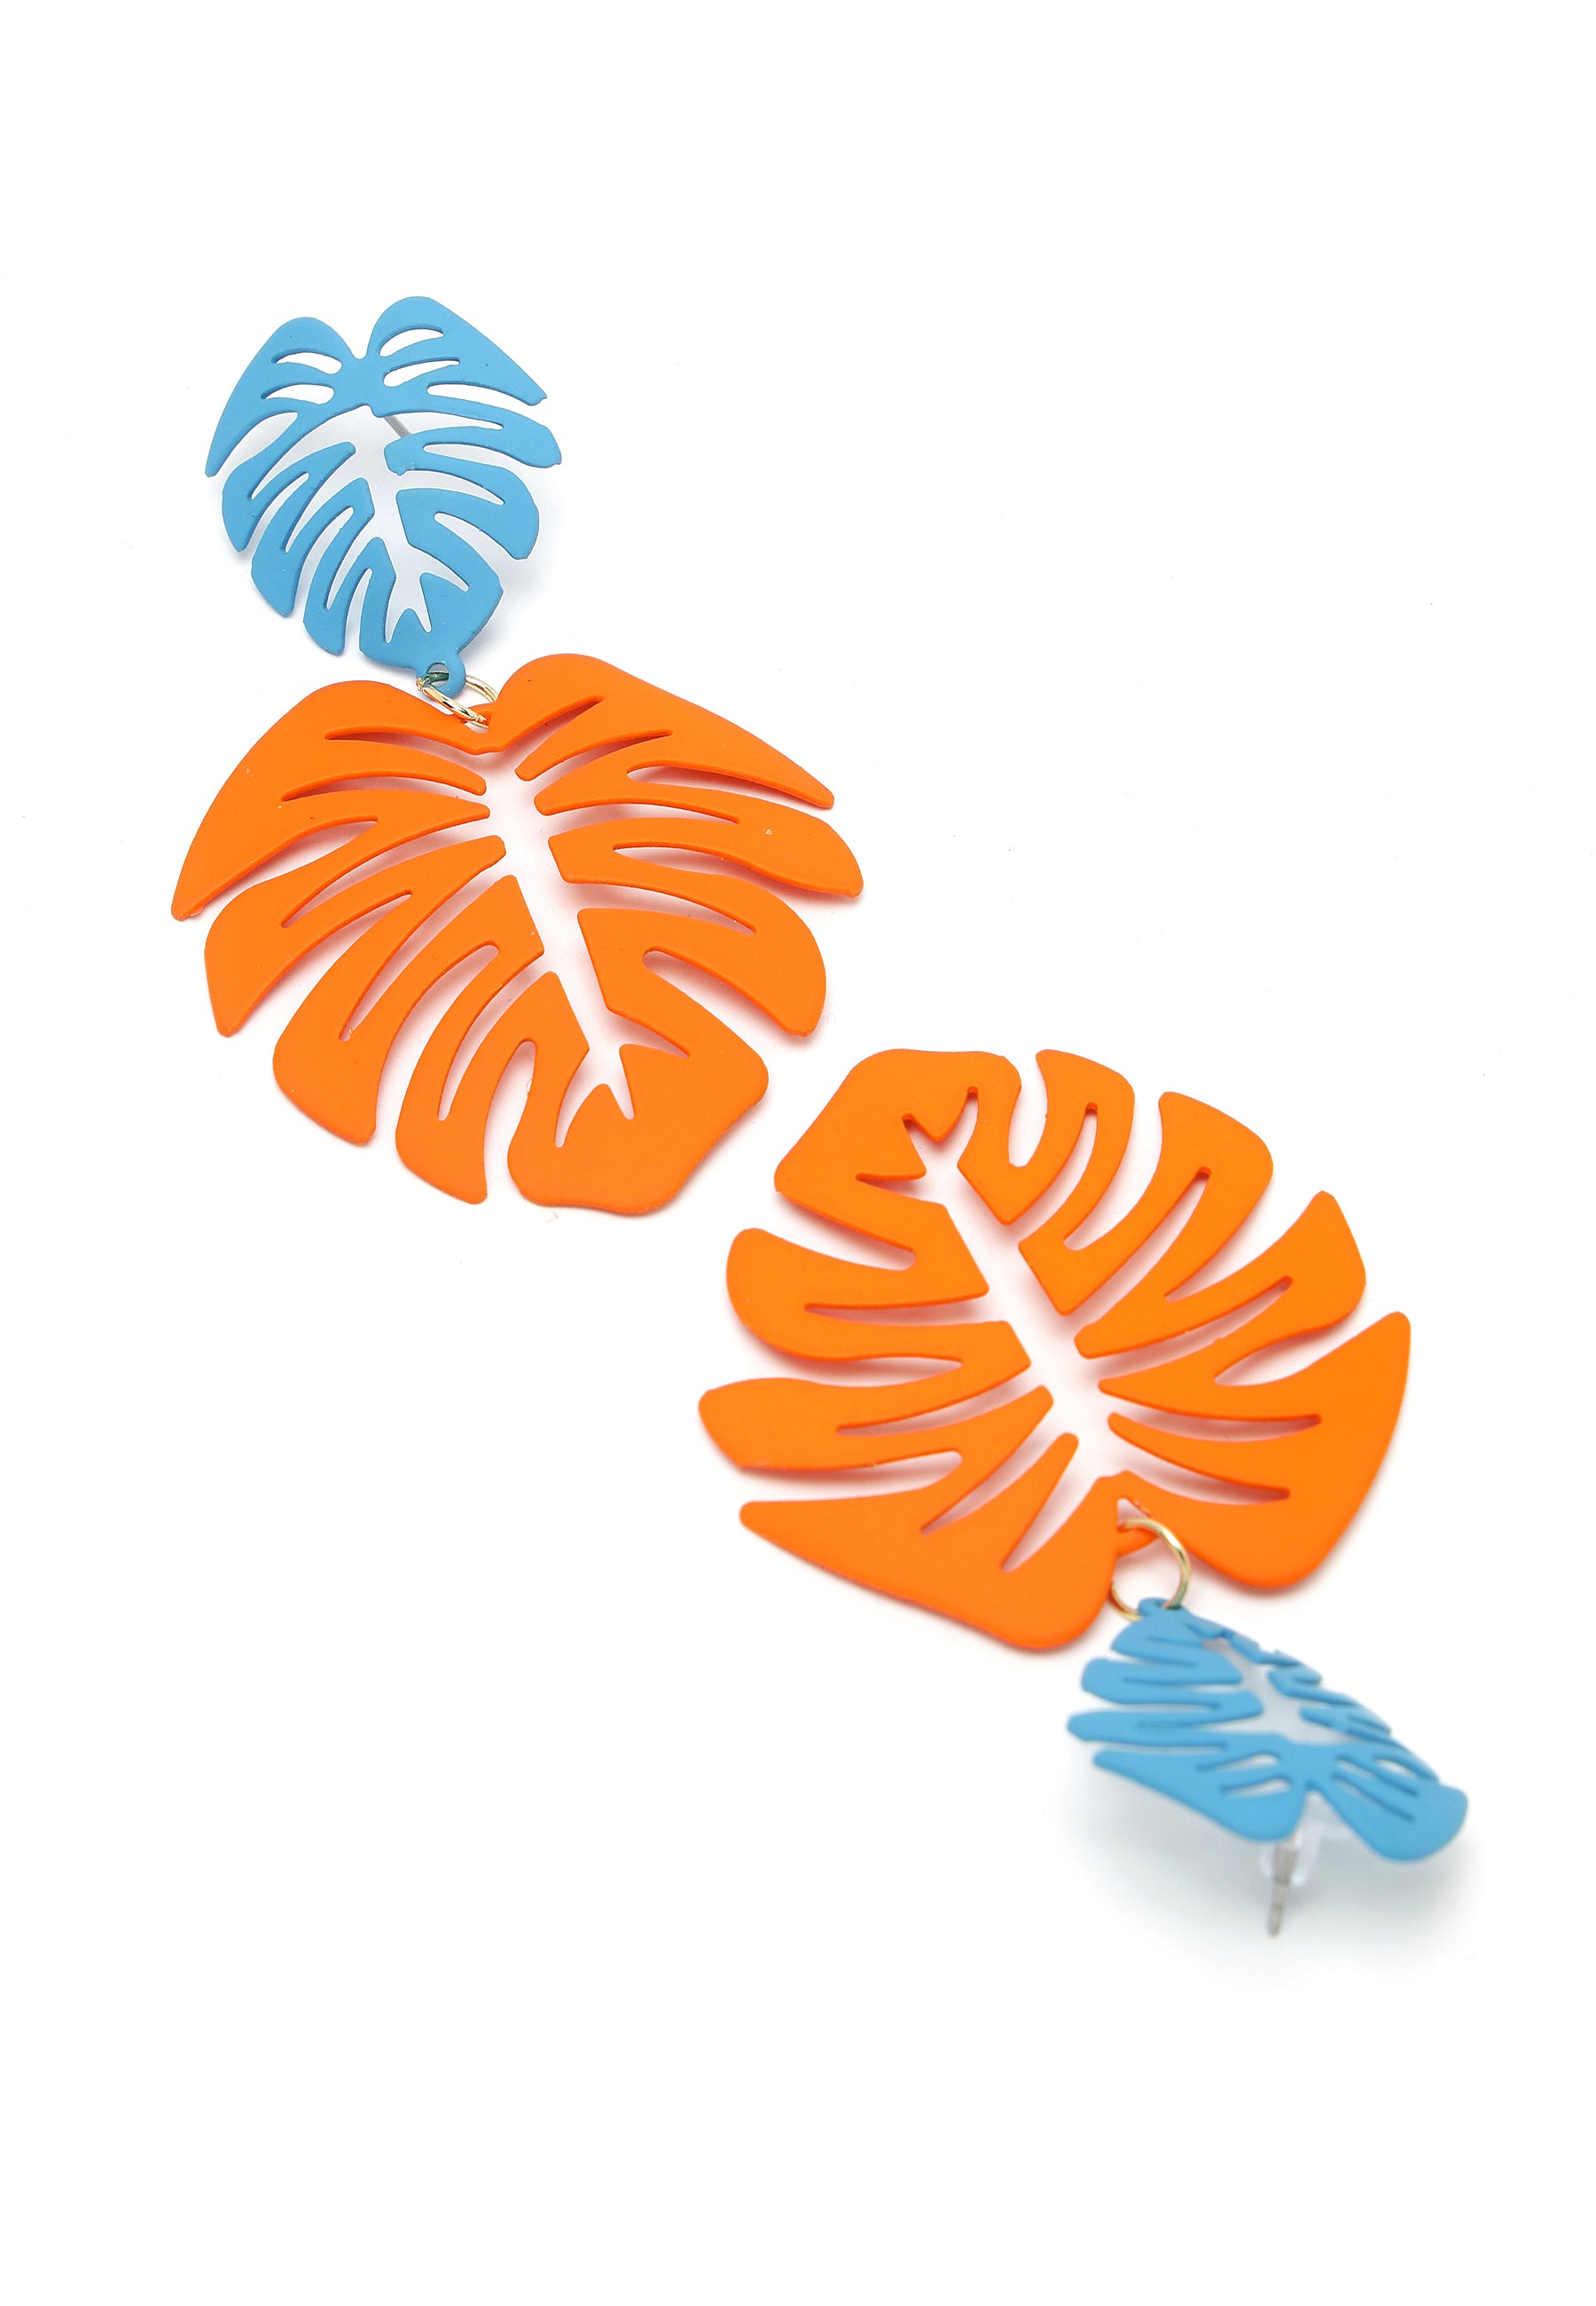 Kolczyki zwisające z pomarańczowymi liśćmi palmowymi